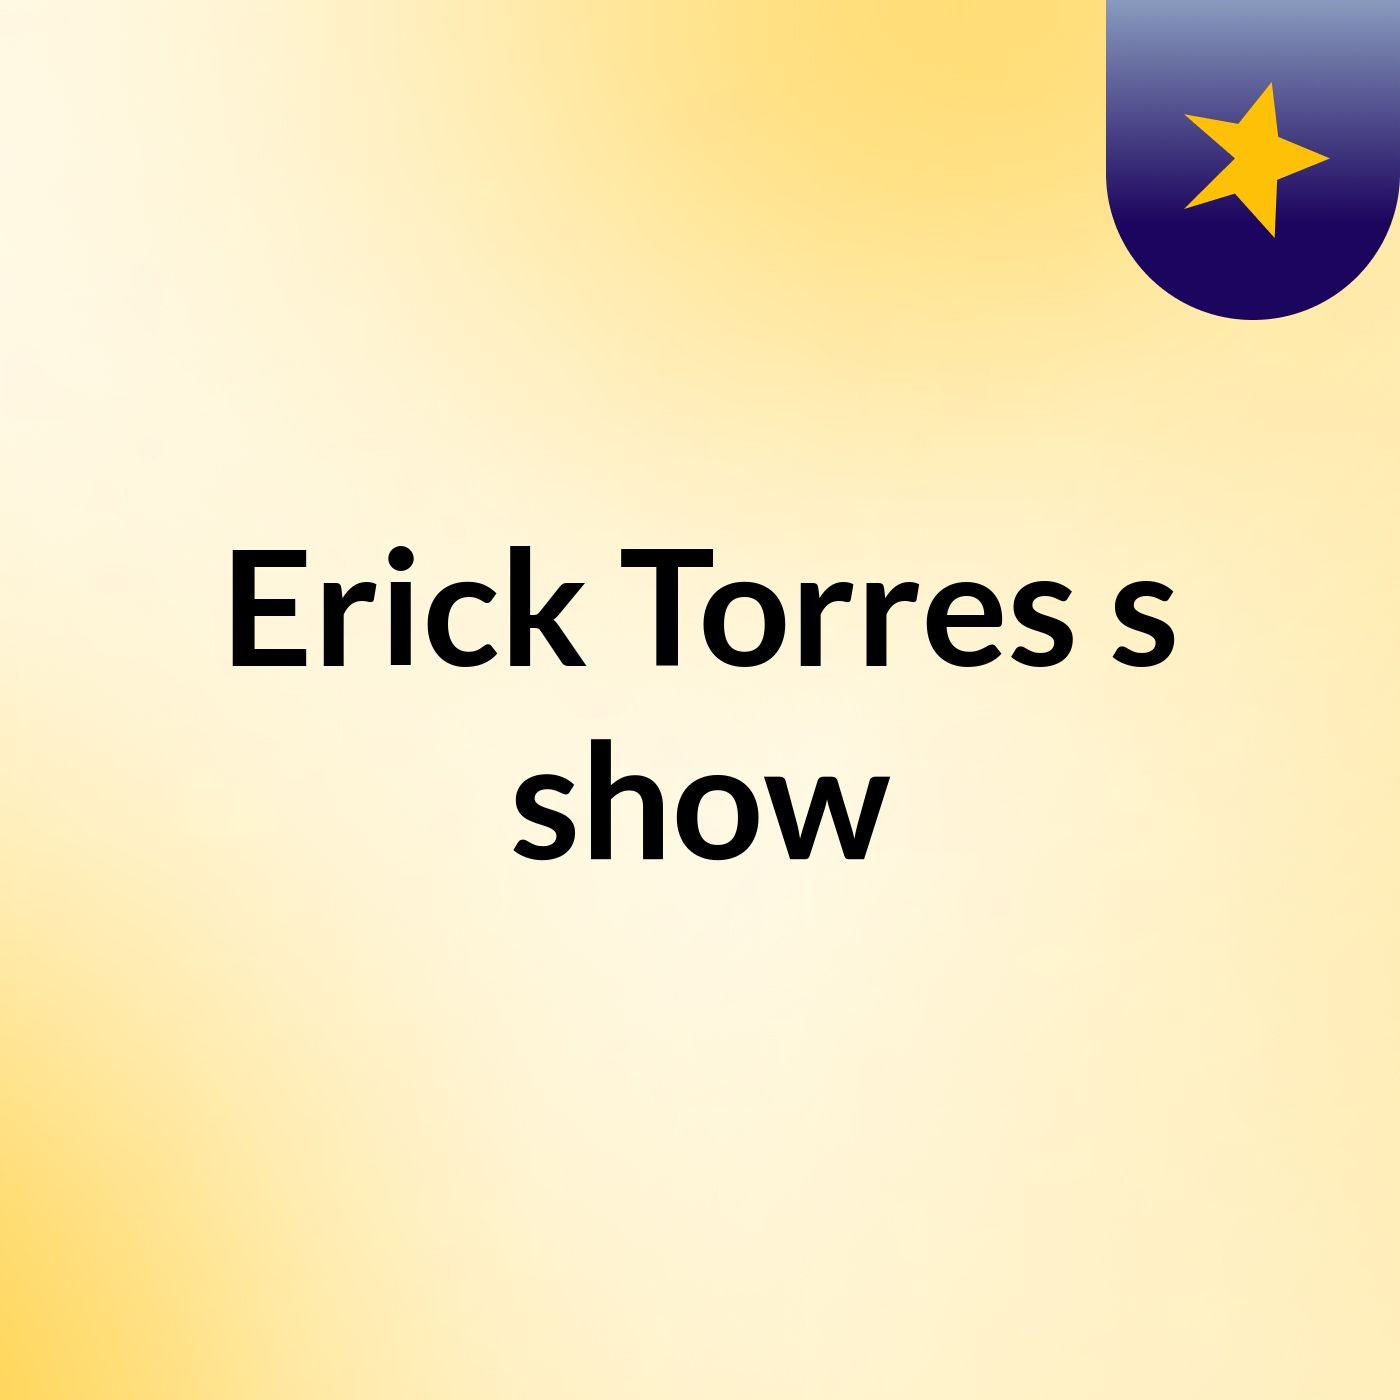 Erick Torres's show